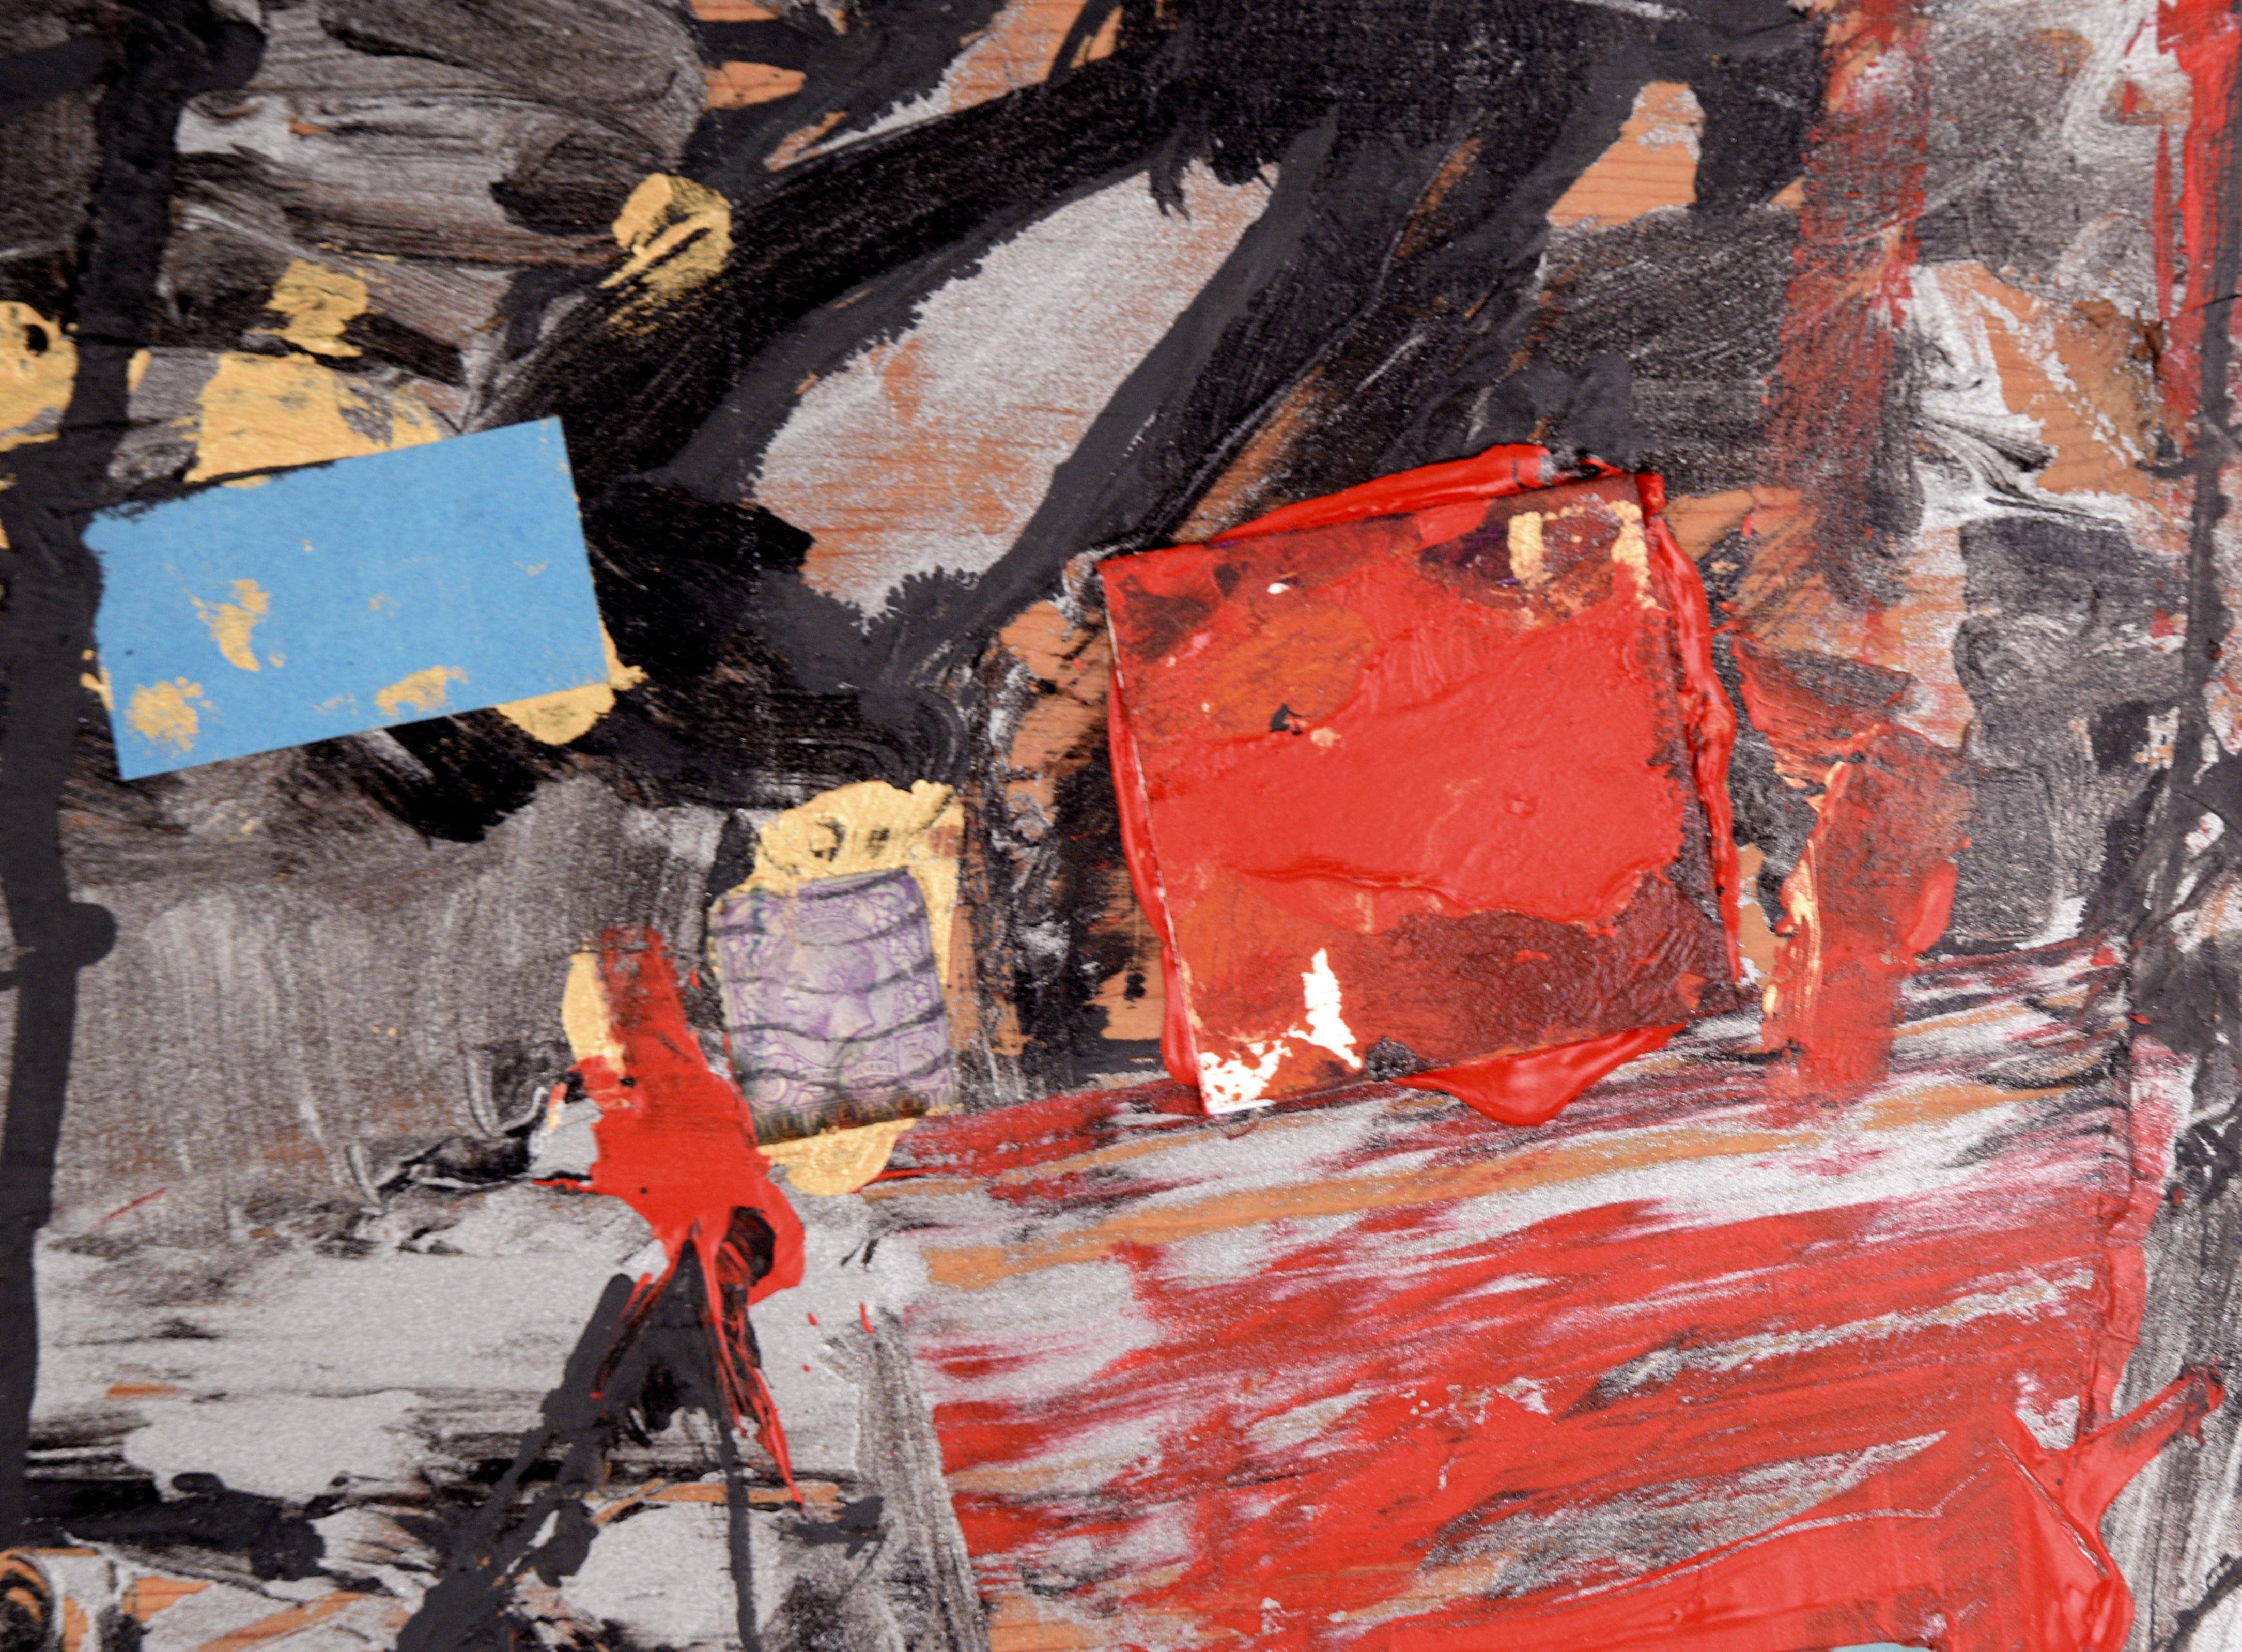 Assemblage n° 2 (La lettre E, les glissières en verre et les tampons) - Marron Abstract Painting par Michael Pauker 